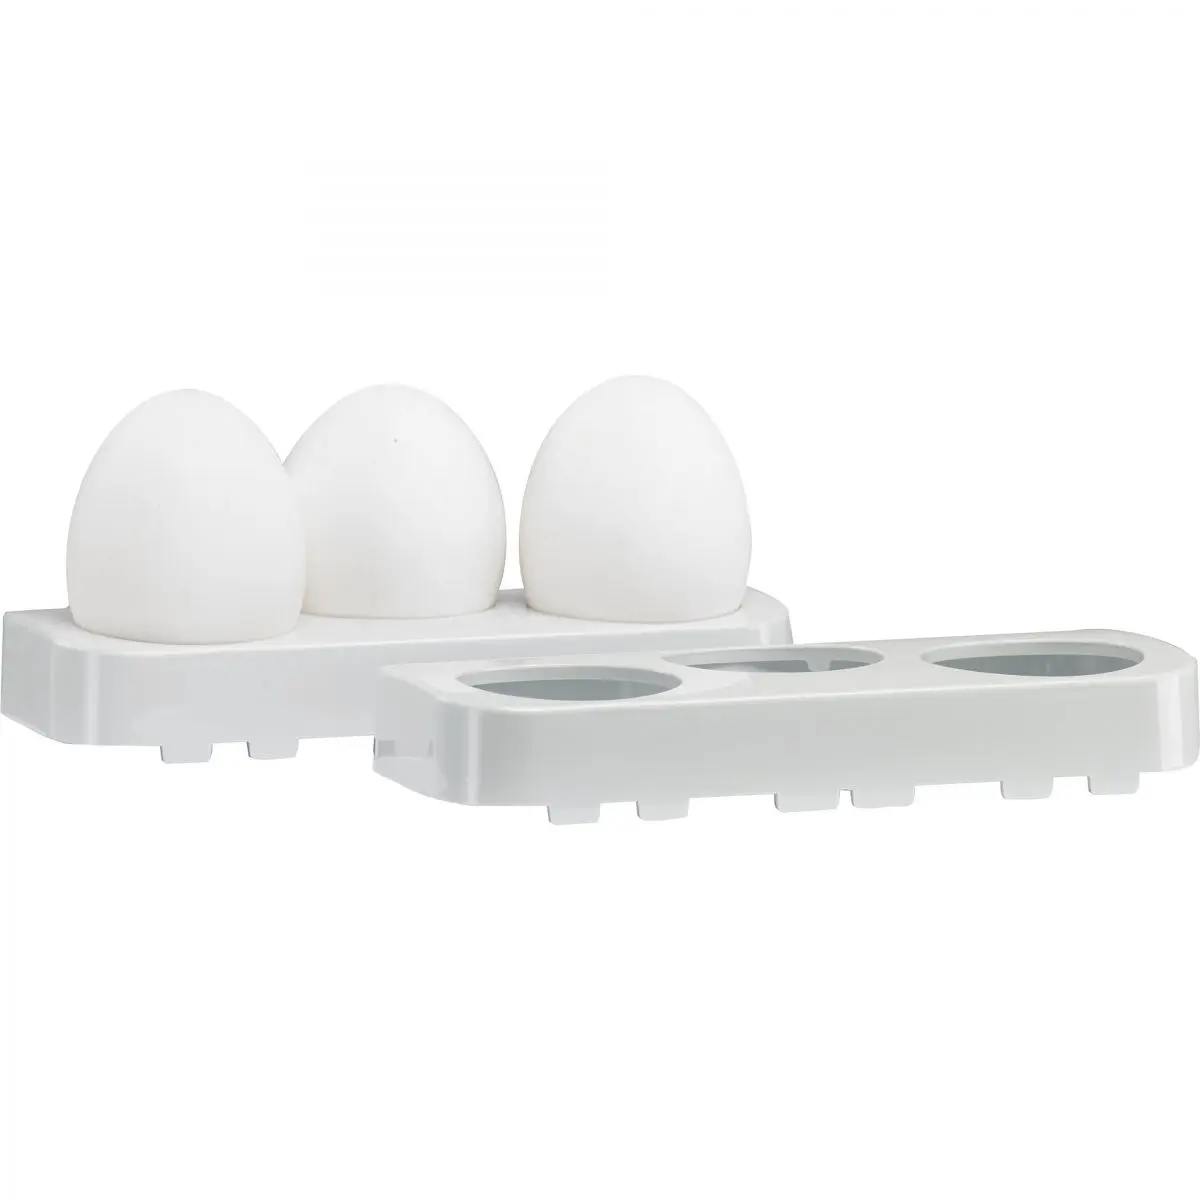 Stojan na vajcia pre chladničky Dometic, séria 4, 6, 7, 8